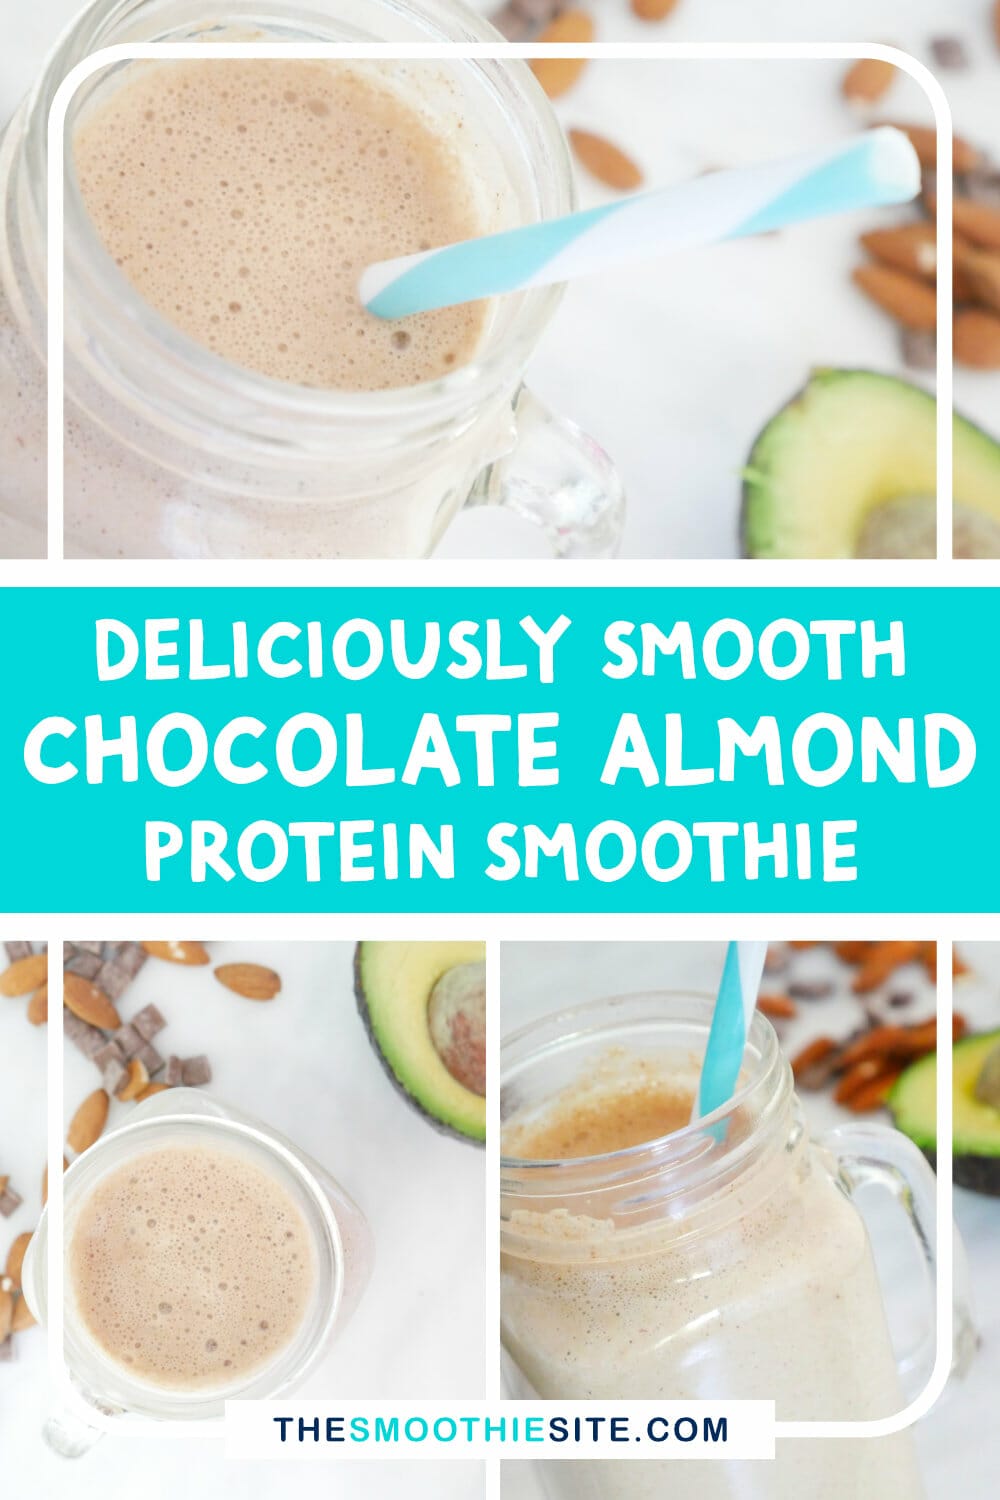 Chocolate almond butter protein shake smoothie (Keto Friendly!) via @thesmoothiesite